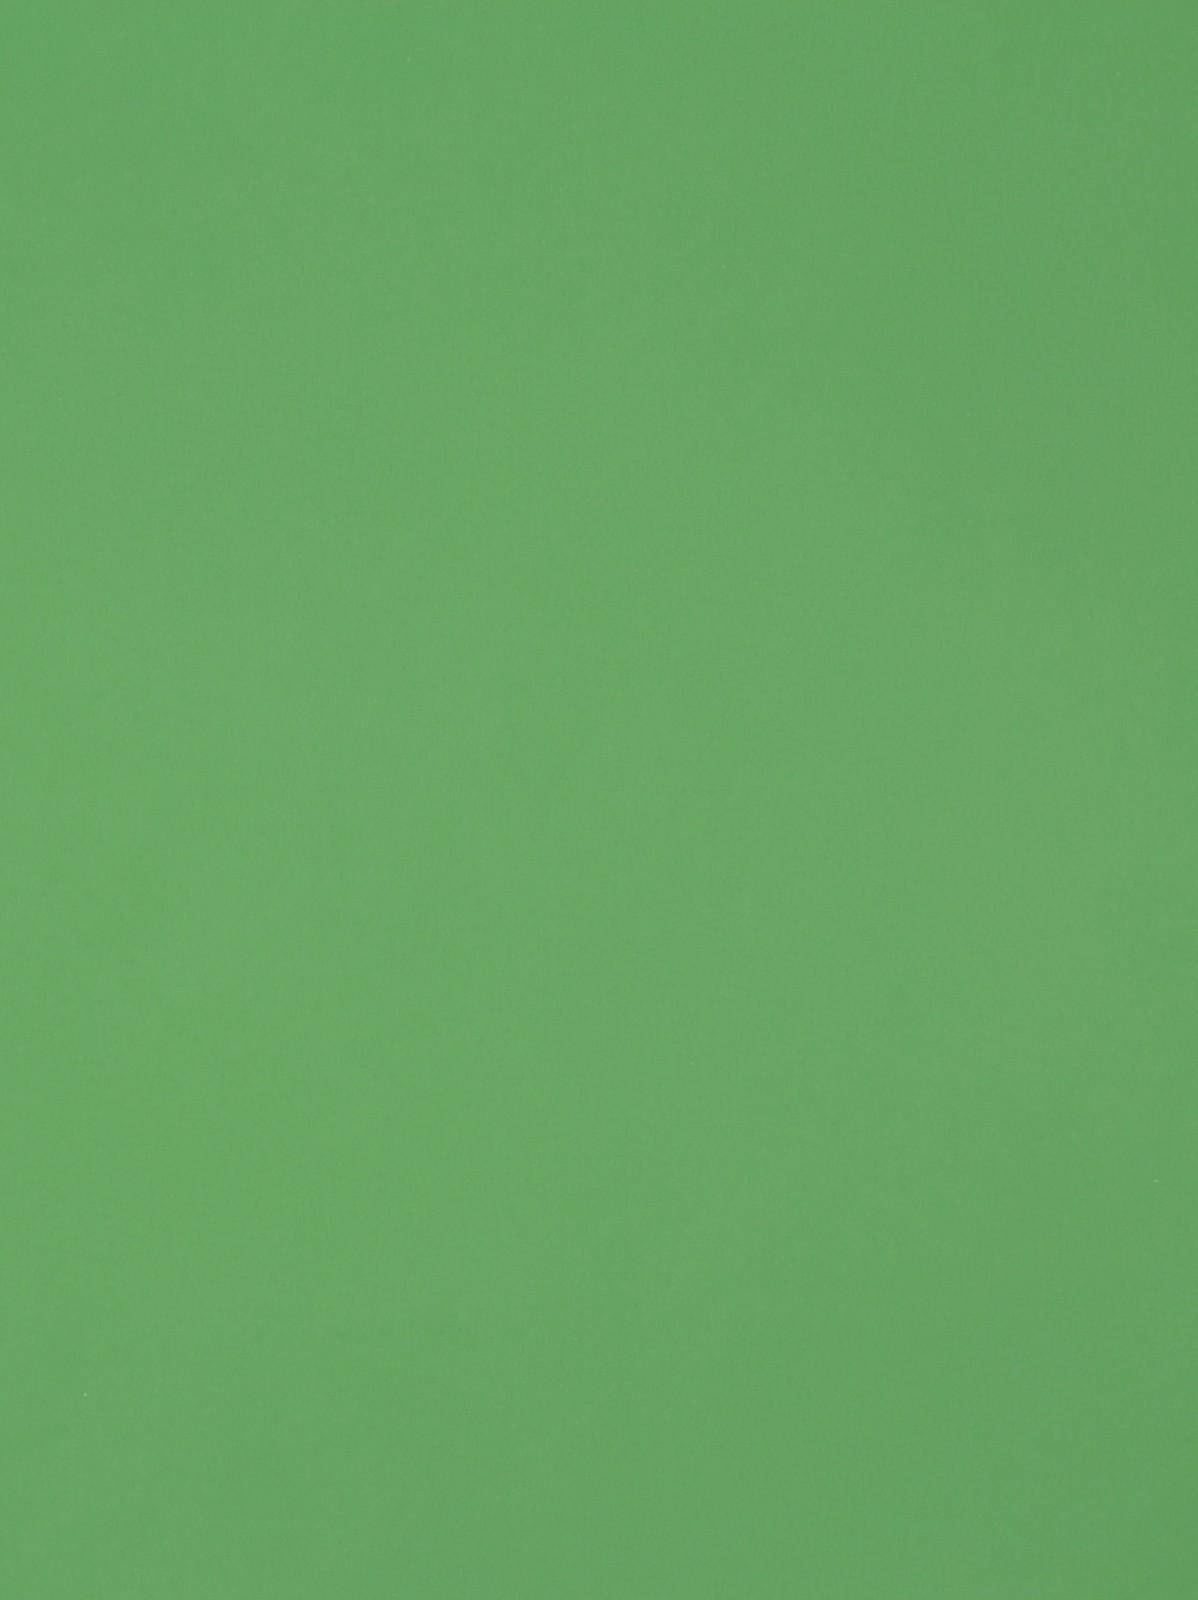 Formicavibrant Light Green Plain - Formica Vibrante En Verde Claro Liso Fondo de pantalla